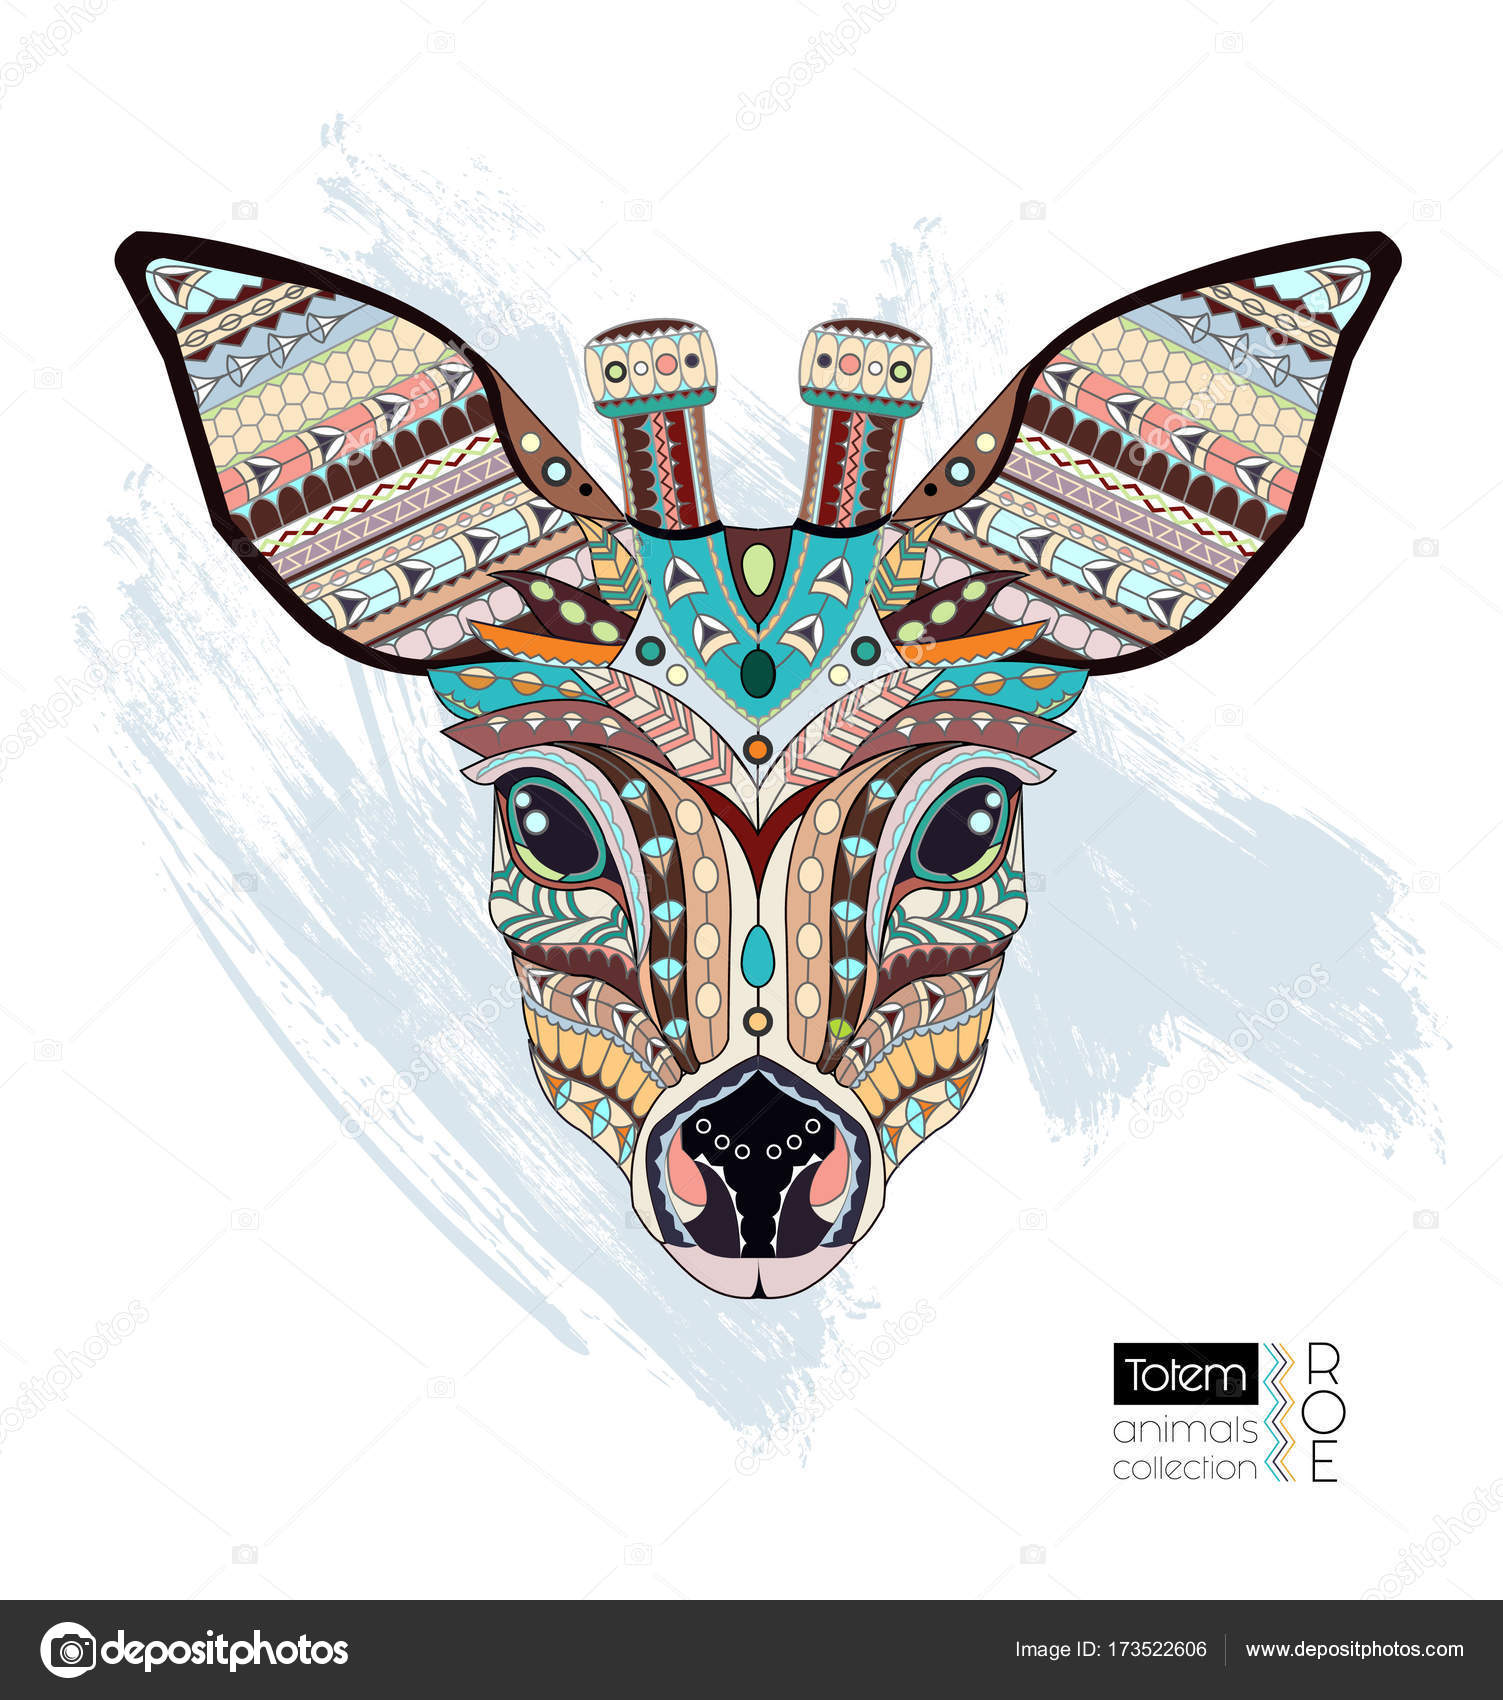 Cervo testa di uova da colorare Prenota pagina Illustrazione di vettore degli animali etnici Africano indiano totem disegno del tatuaggio